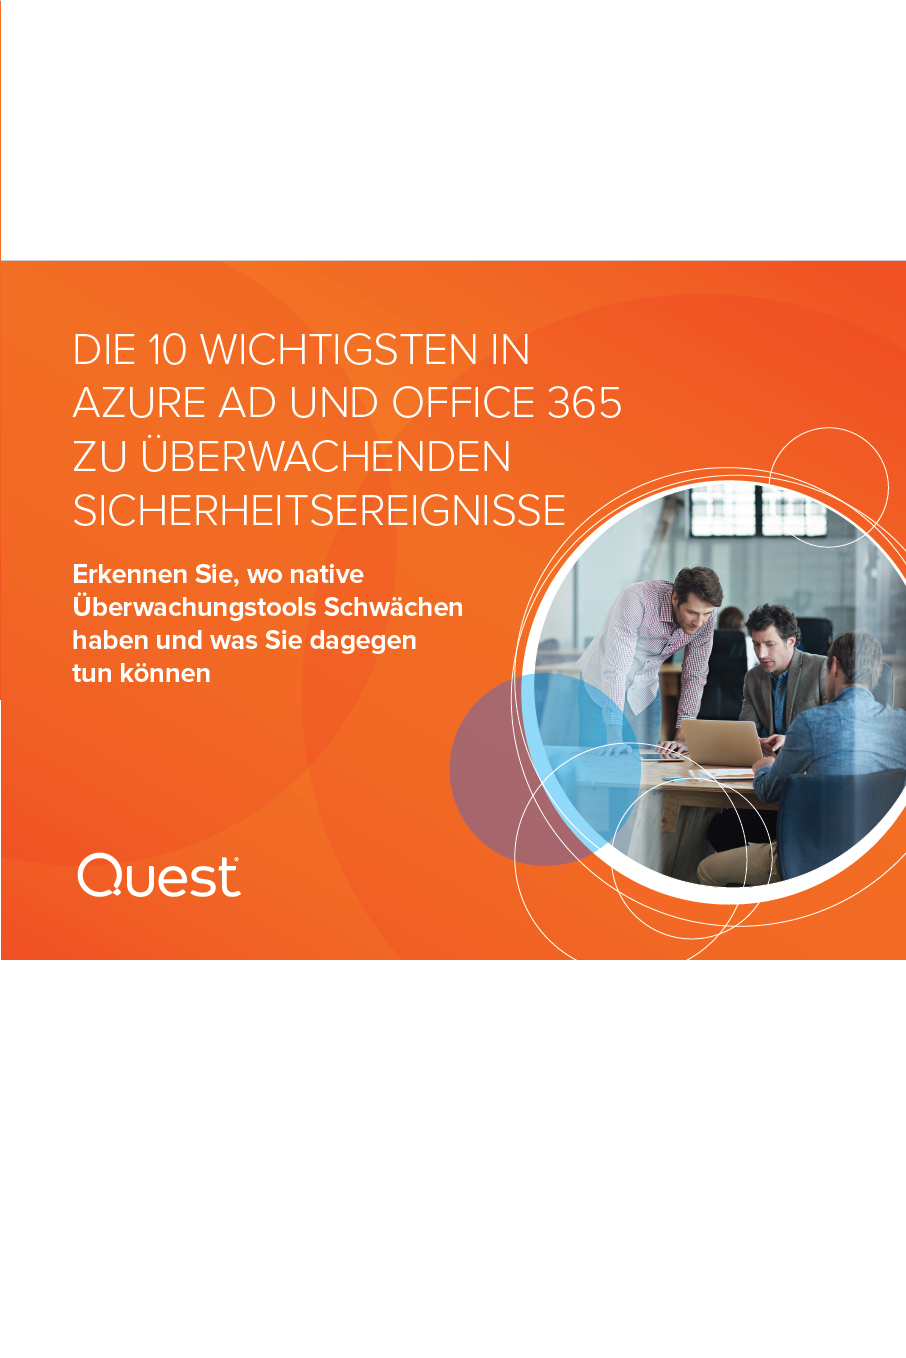 Die 10 Wichtigsten in Azure Ad und Office 365 zu überwachenden Sicherheitsereignisse 